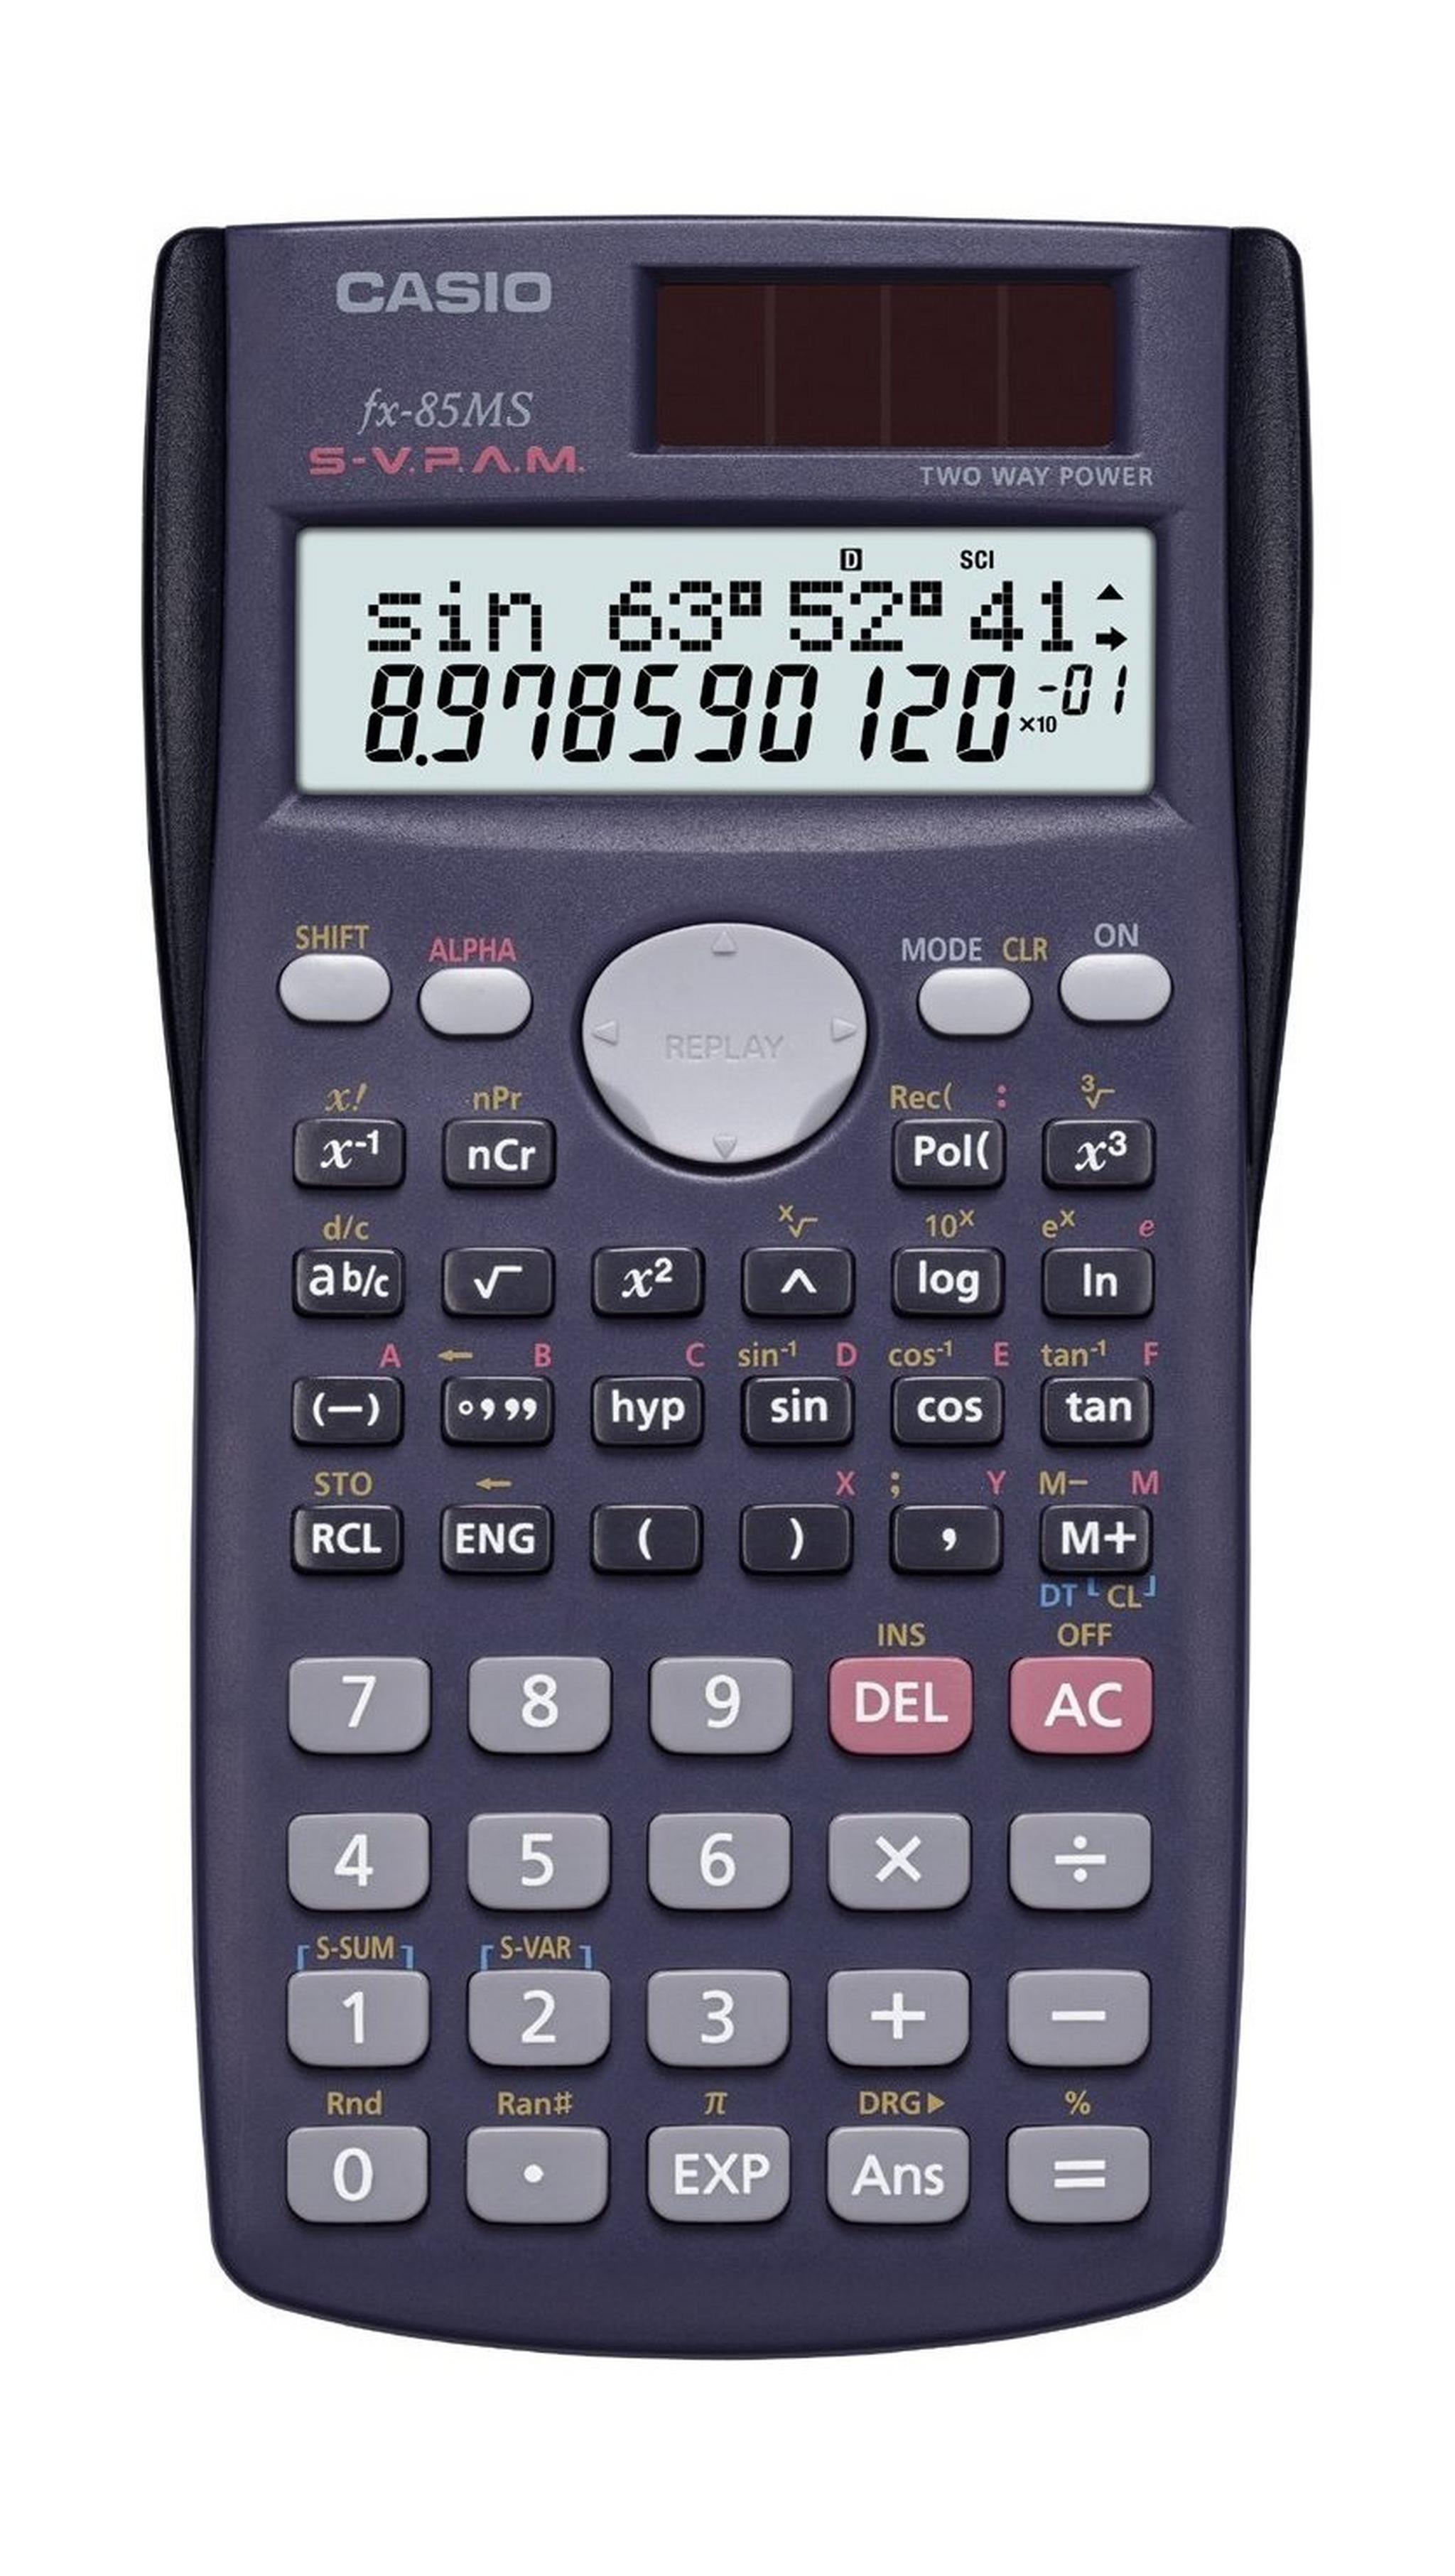 Casio 240 Function Scientific Calculator (Fx-85ms) - Black